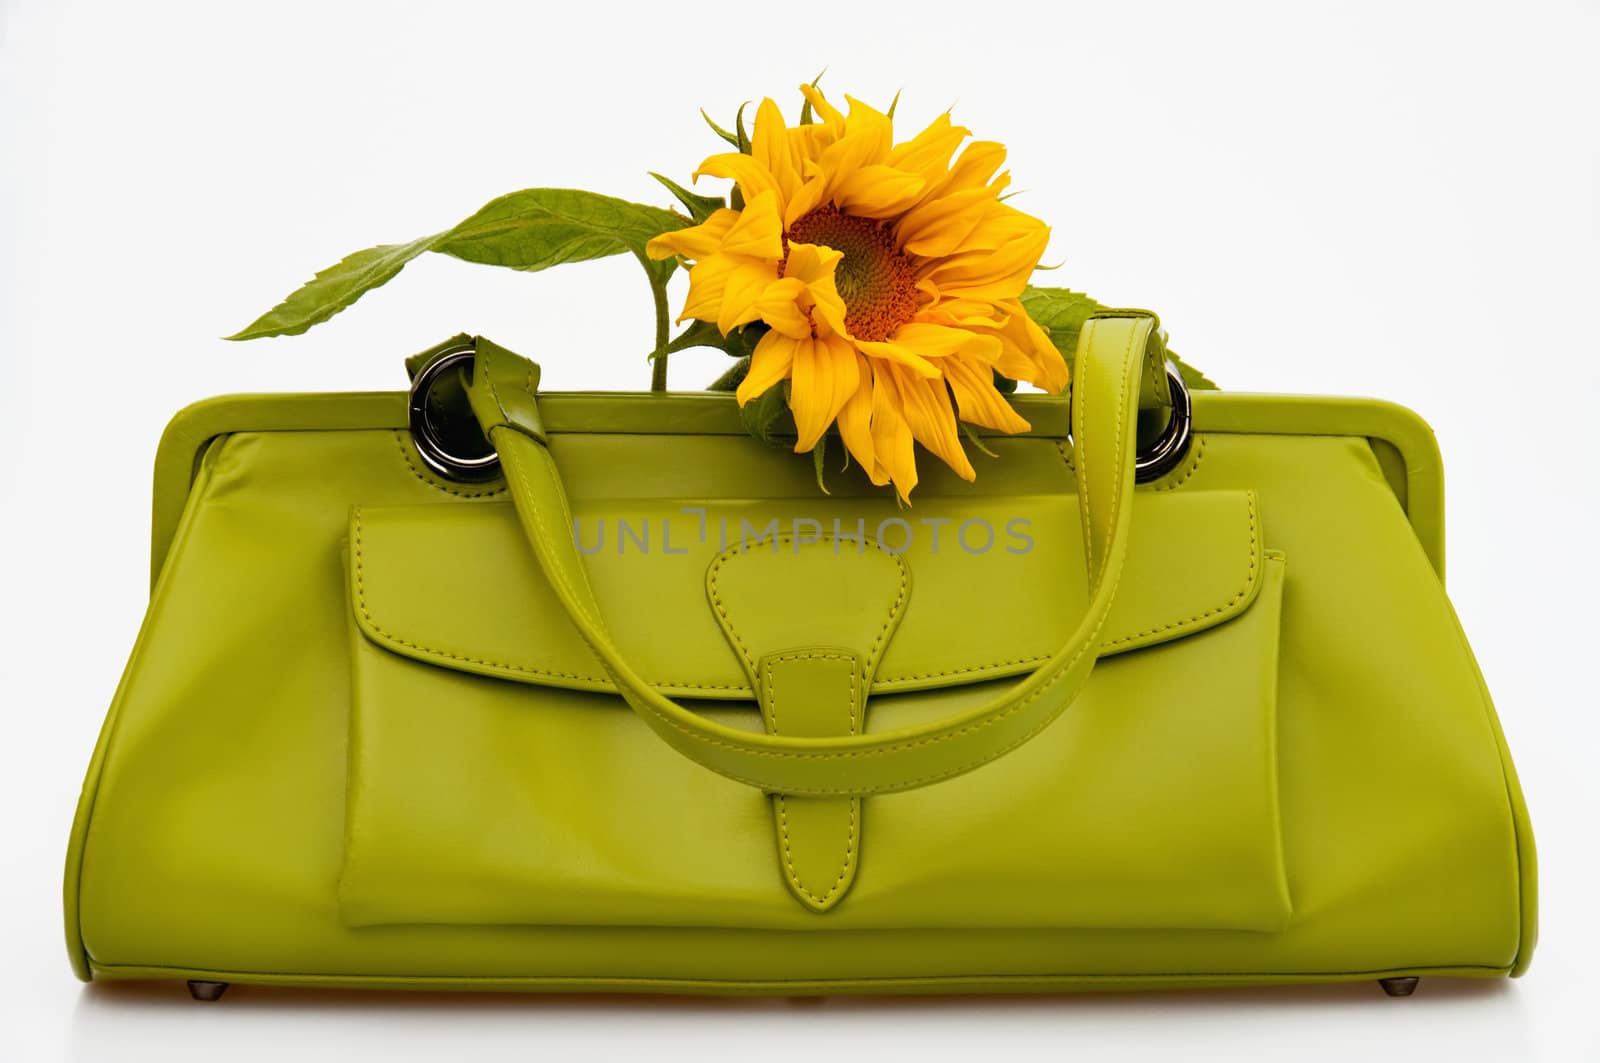 A grenn sixties style handbag with a sunflower. Isolated.